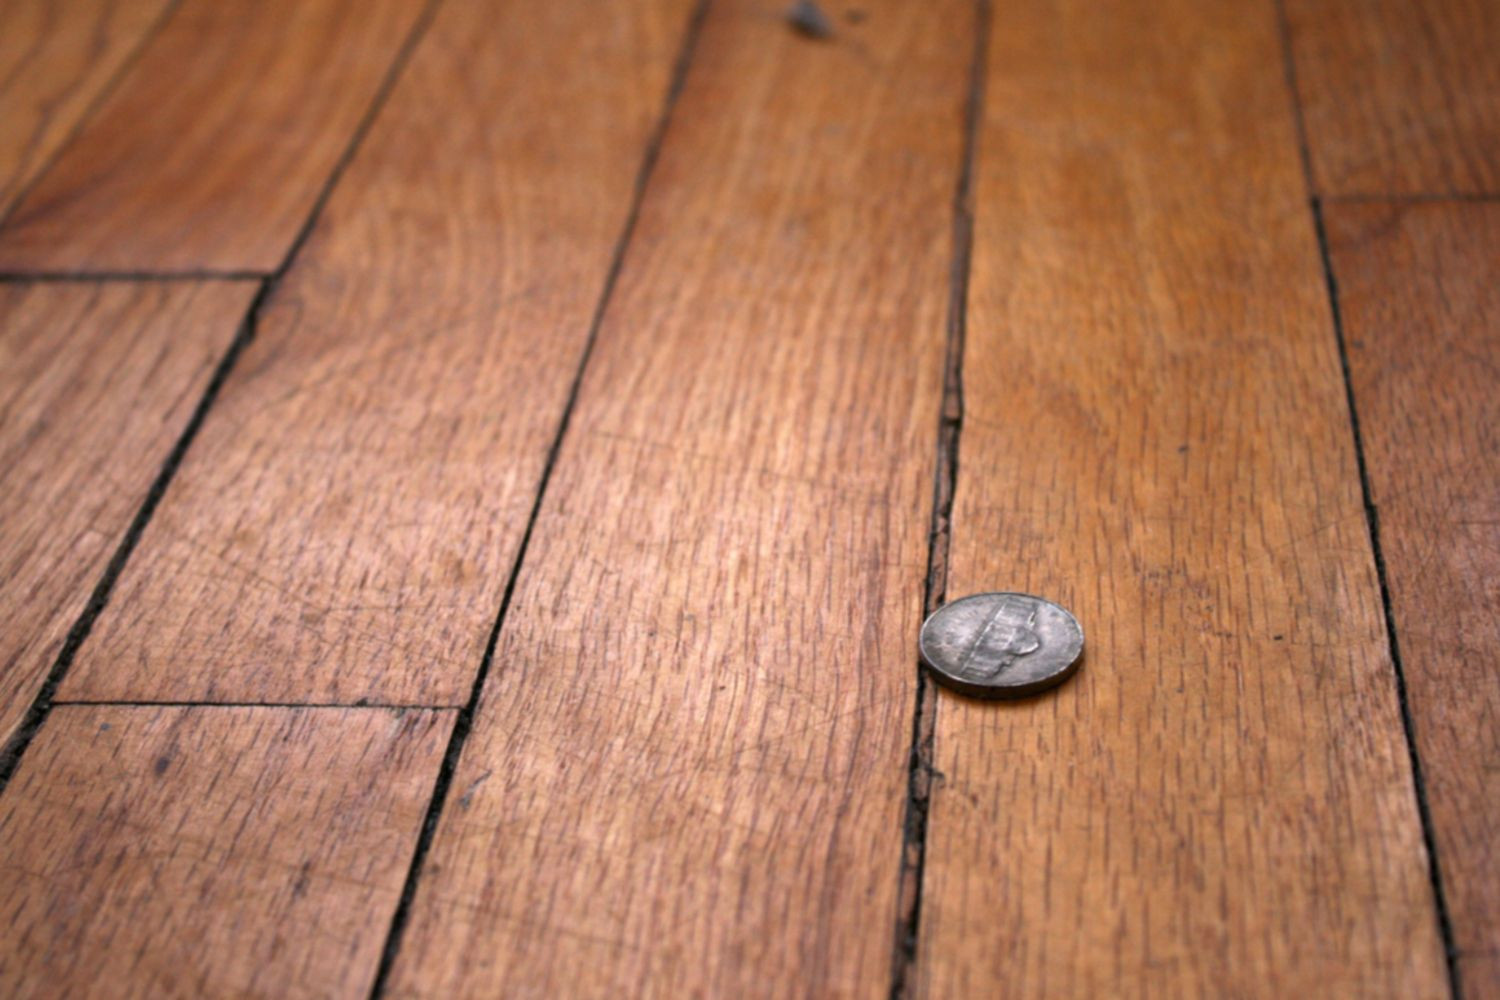 29 Unique Hardwood Floor Maintenance Products 2024 free download hardwood floor maintenance products of how to repair gaps between floorboards regarding wood floor with gaps between boards 1500 x 1000 56a49eb25f9b58b7d0d7df8d